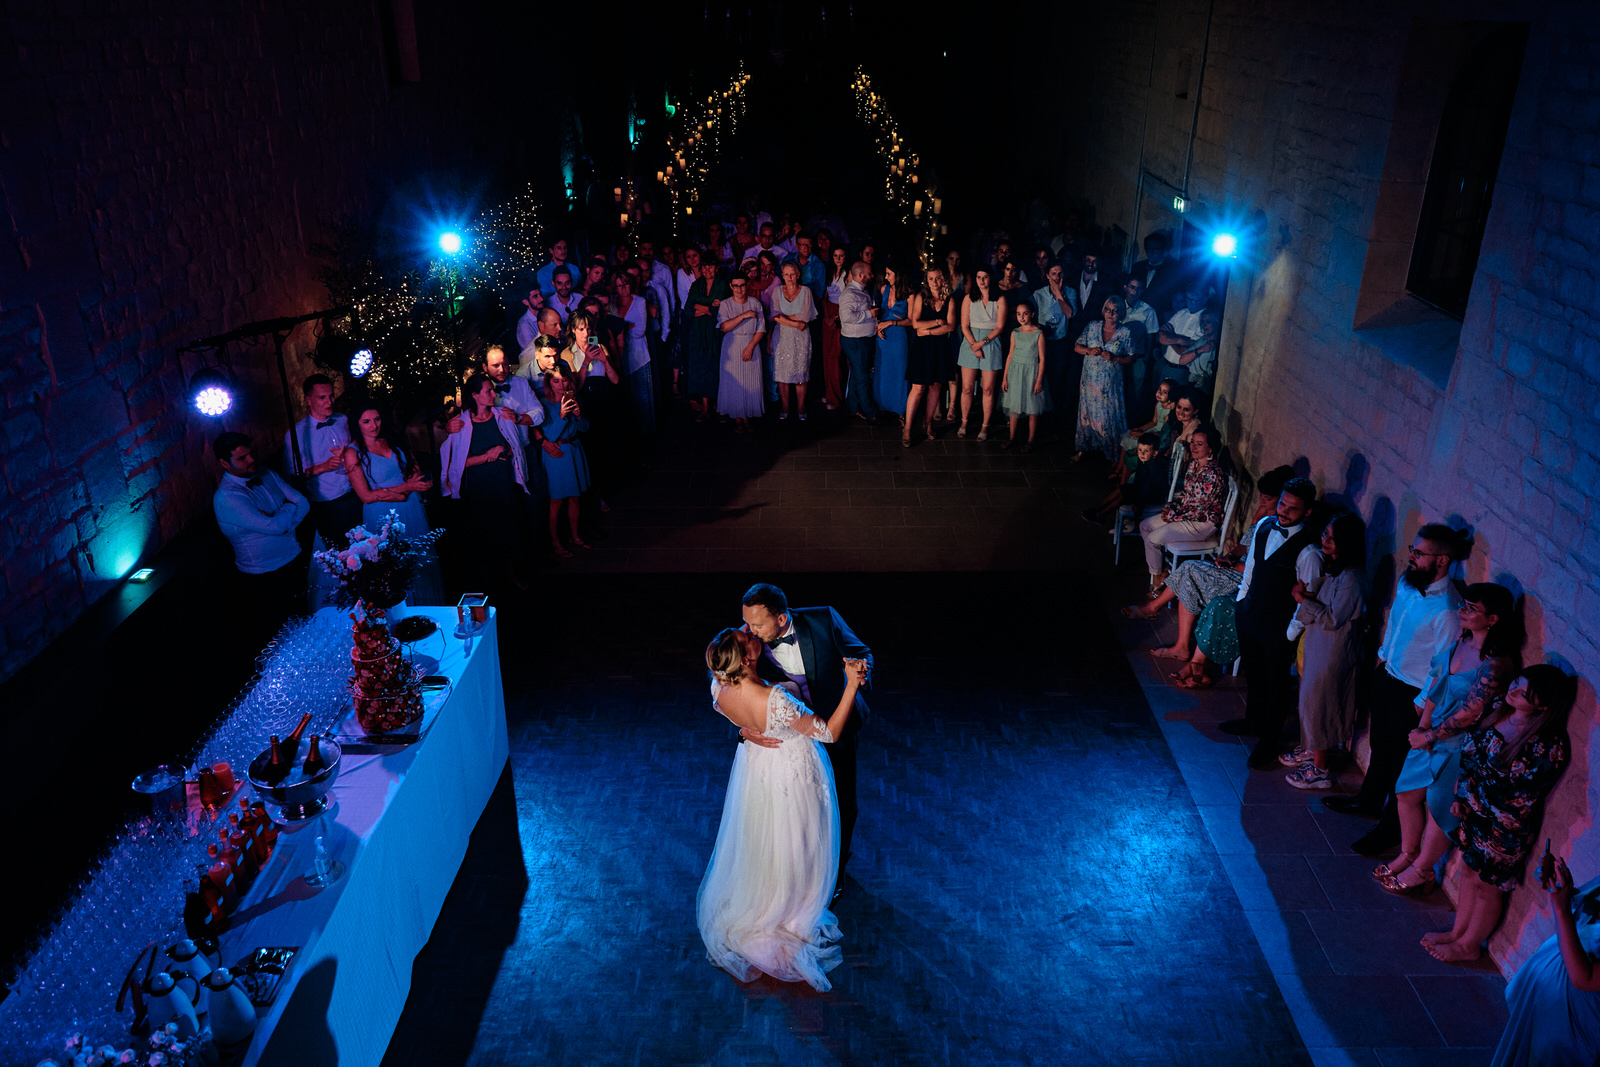 photo de la première danse prise en hauteur, les invités regardent les mariés danser